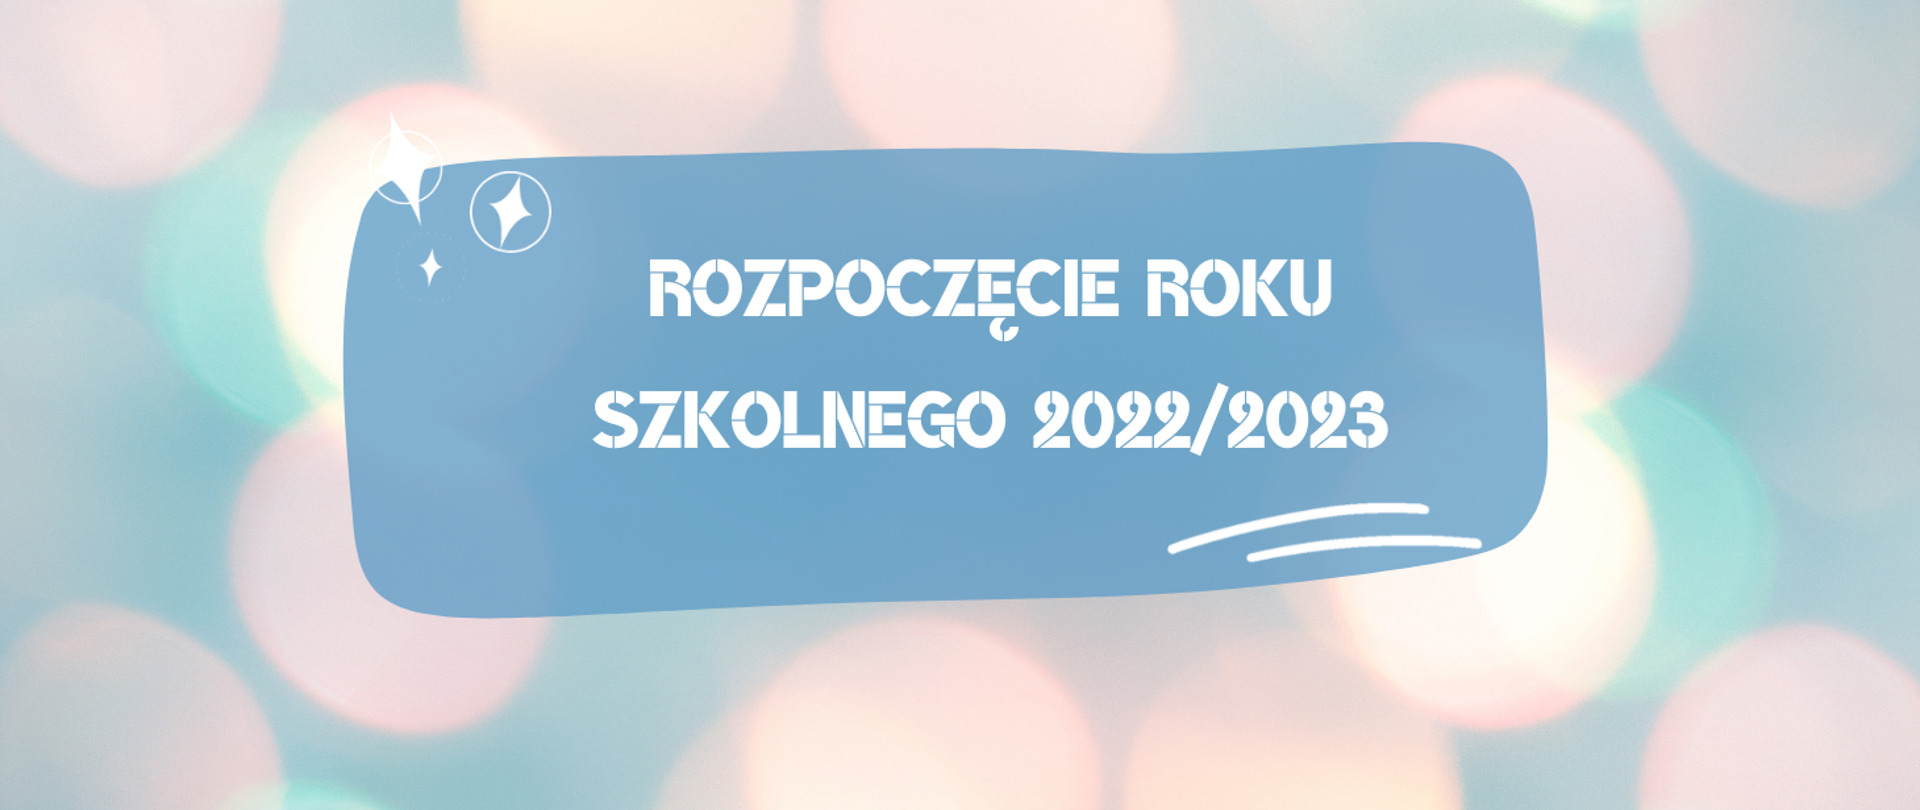 Na pastelowym tle napis "Rozpoczęcie roku szkolnego 2022/2023".